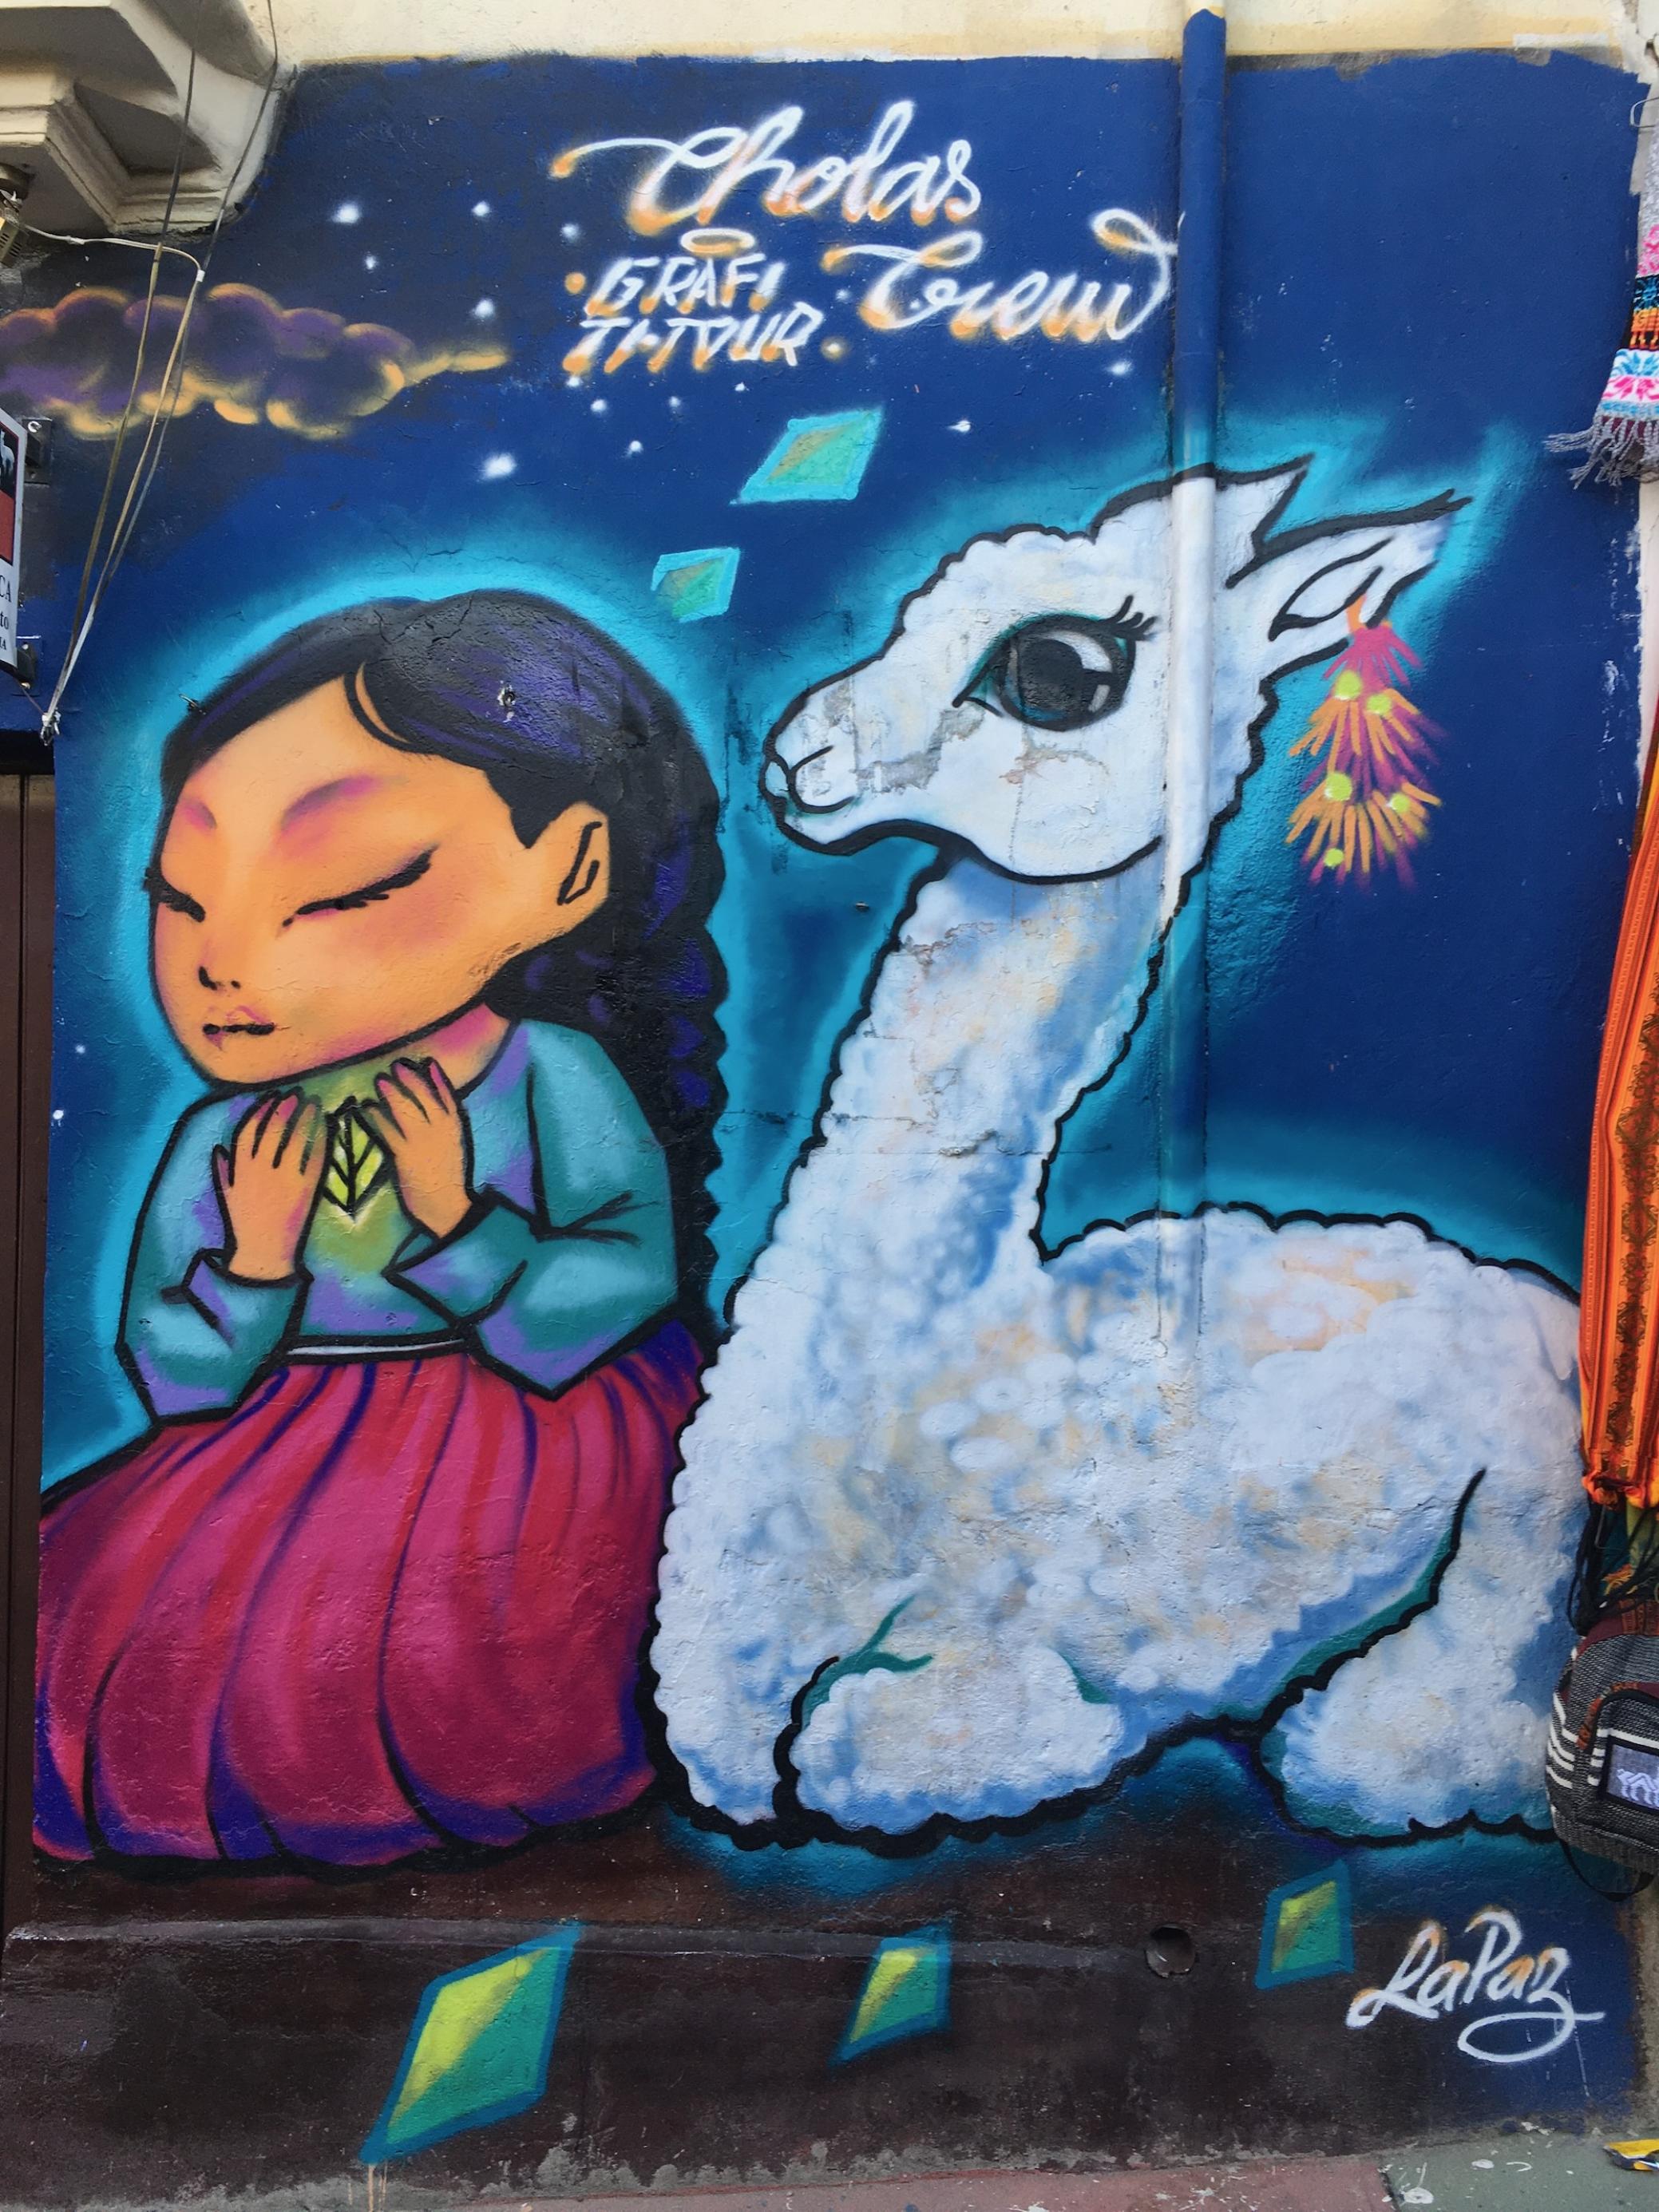 Bunte Wandmalerei zeigt indigene Frau mit geschlossenen Augen und langen Zöpfen, die ein Blatt in den Händen trägt. Neben ihr sitzt ein schneeweißes Lama.